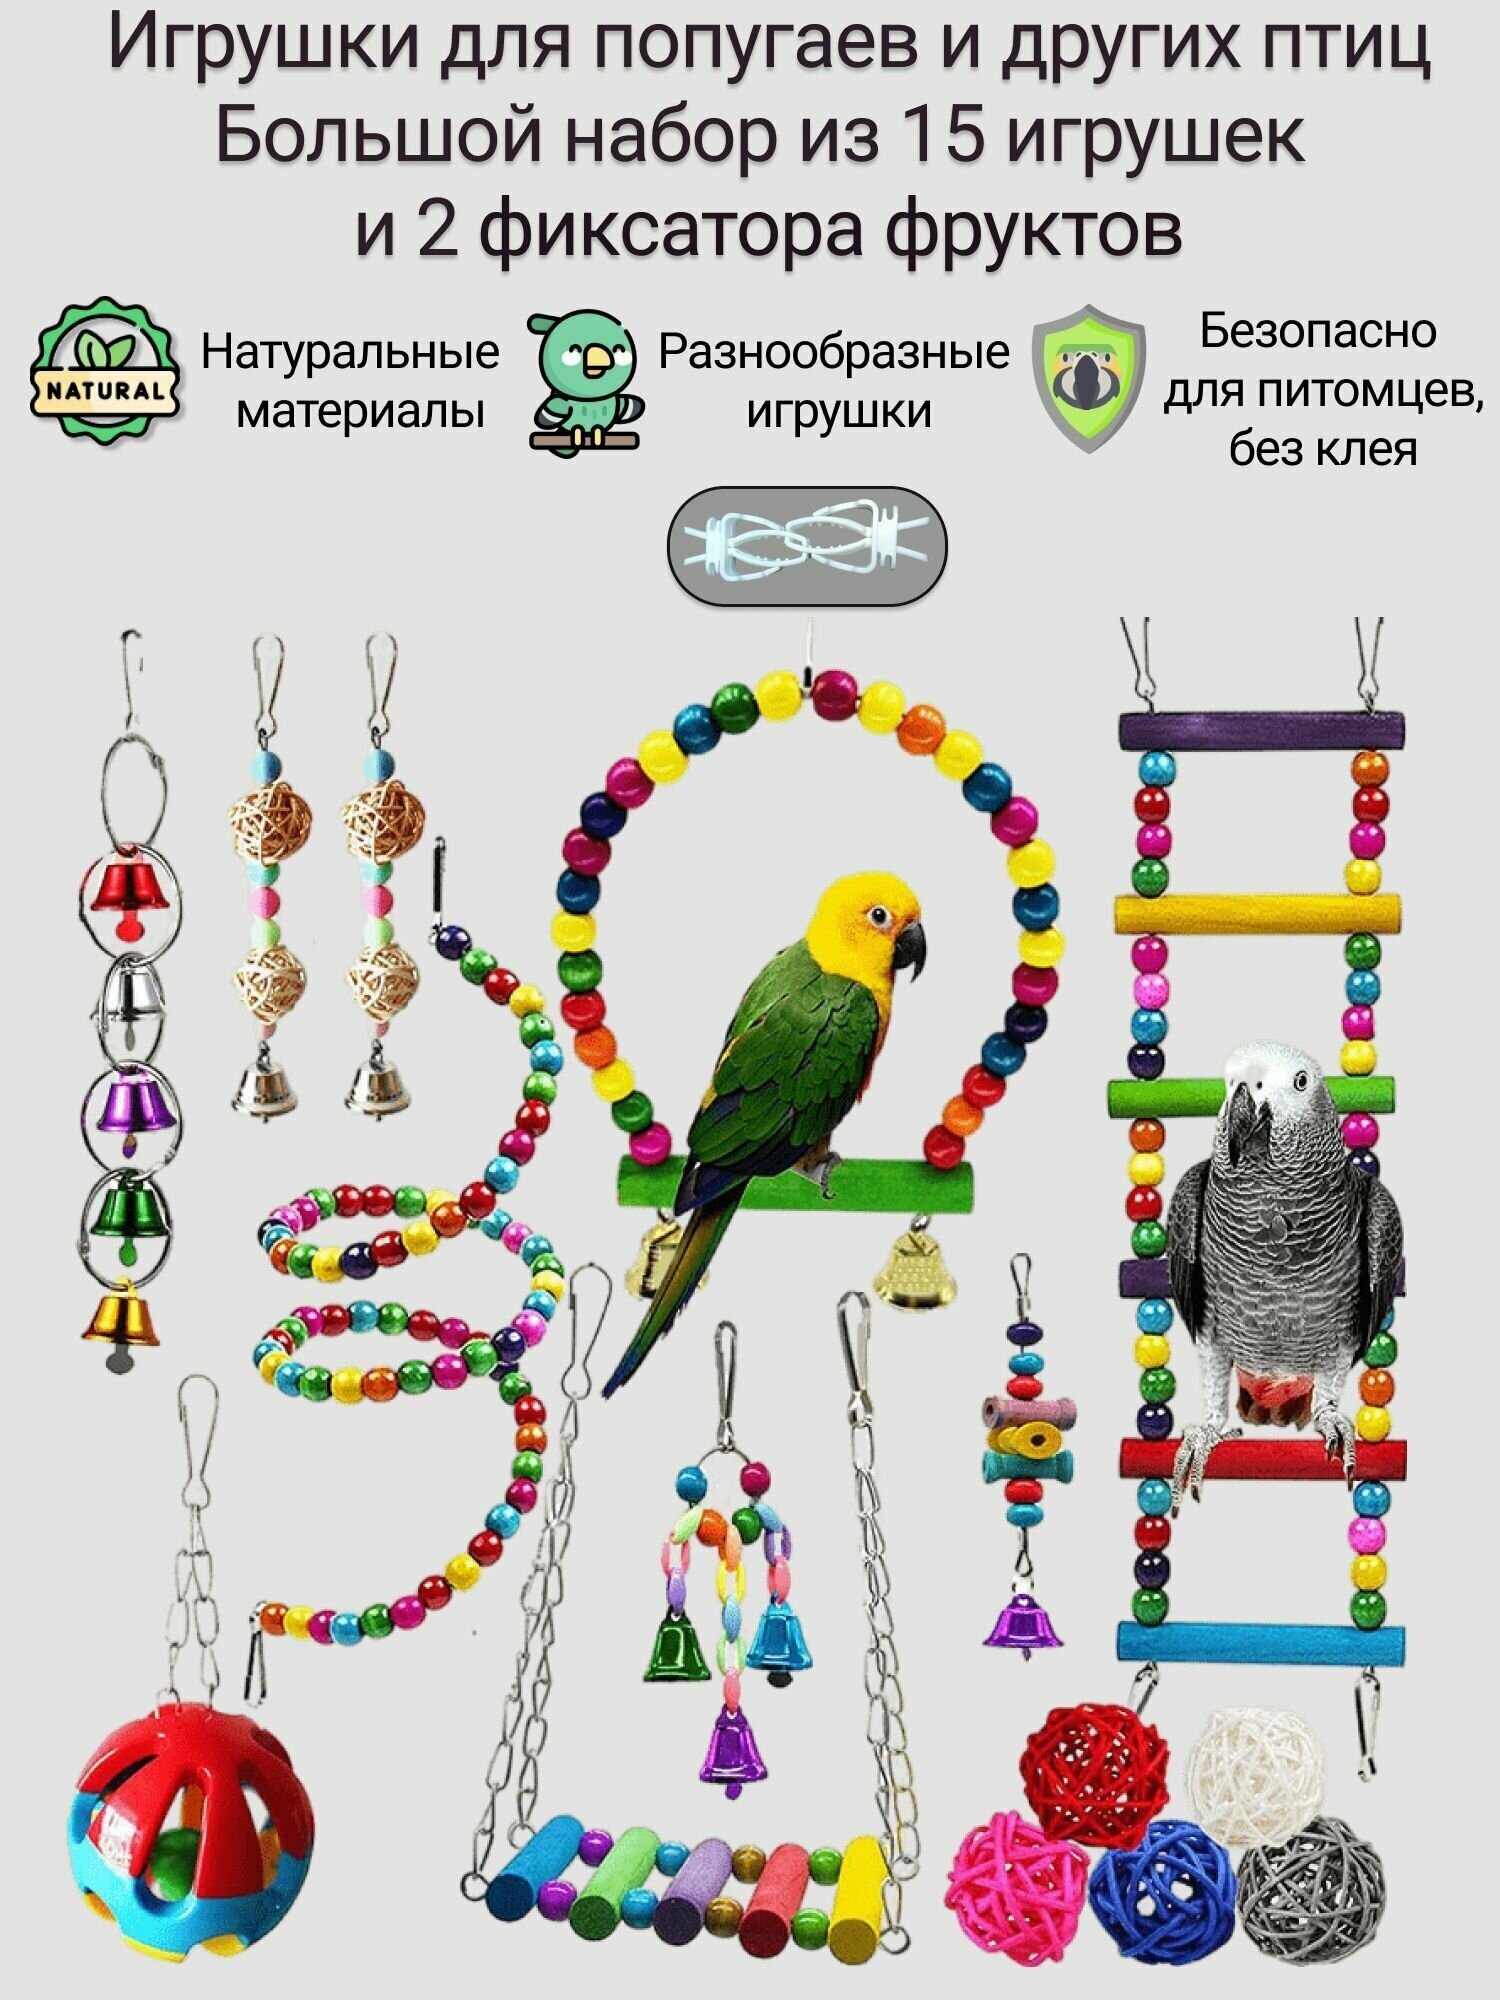 Игрушки для попугаев. Набор из 15 игрушек и двух держателей фруктов